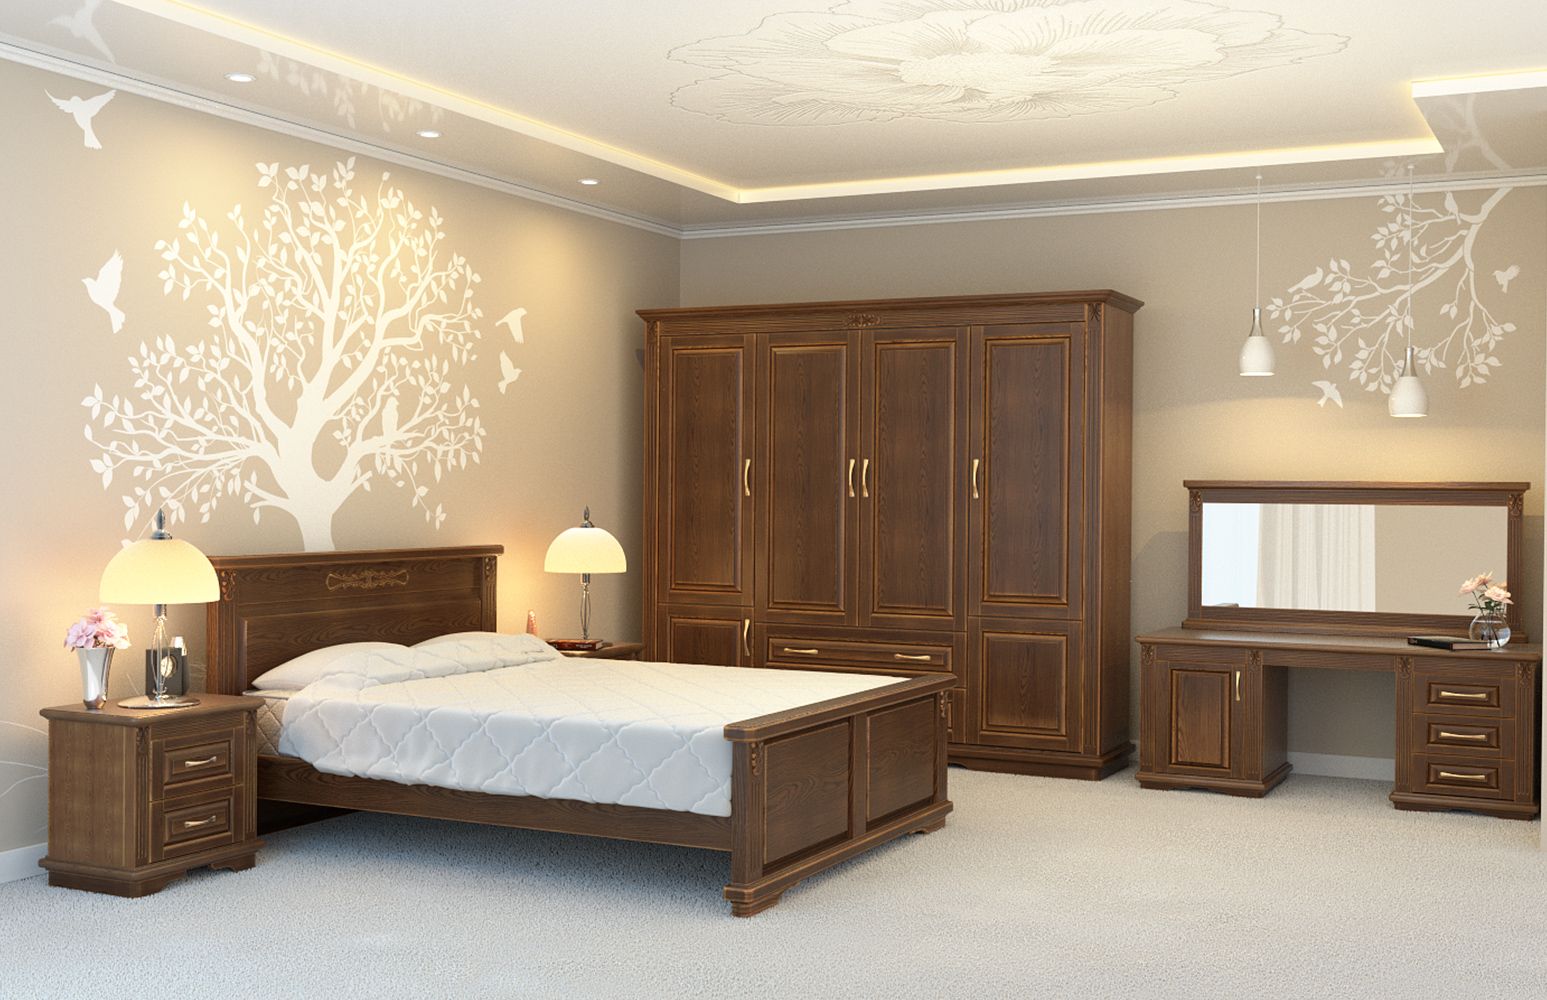 Кровать Dreamline Палермо (ясень) представлен на изображении